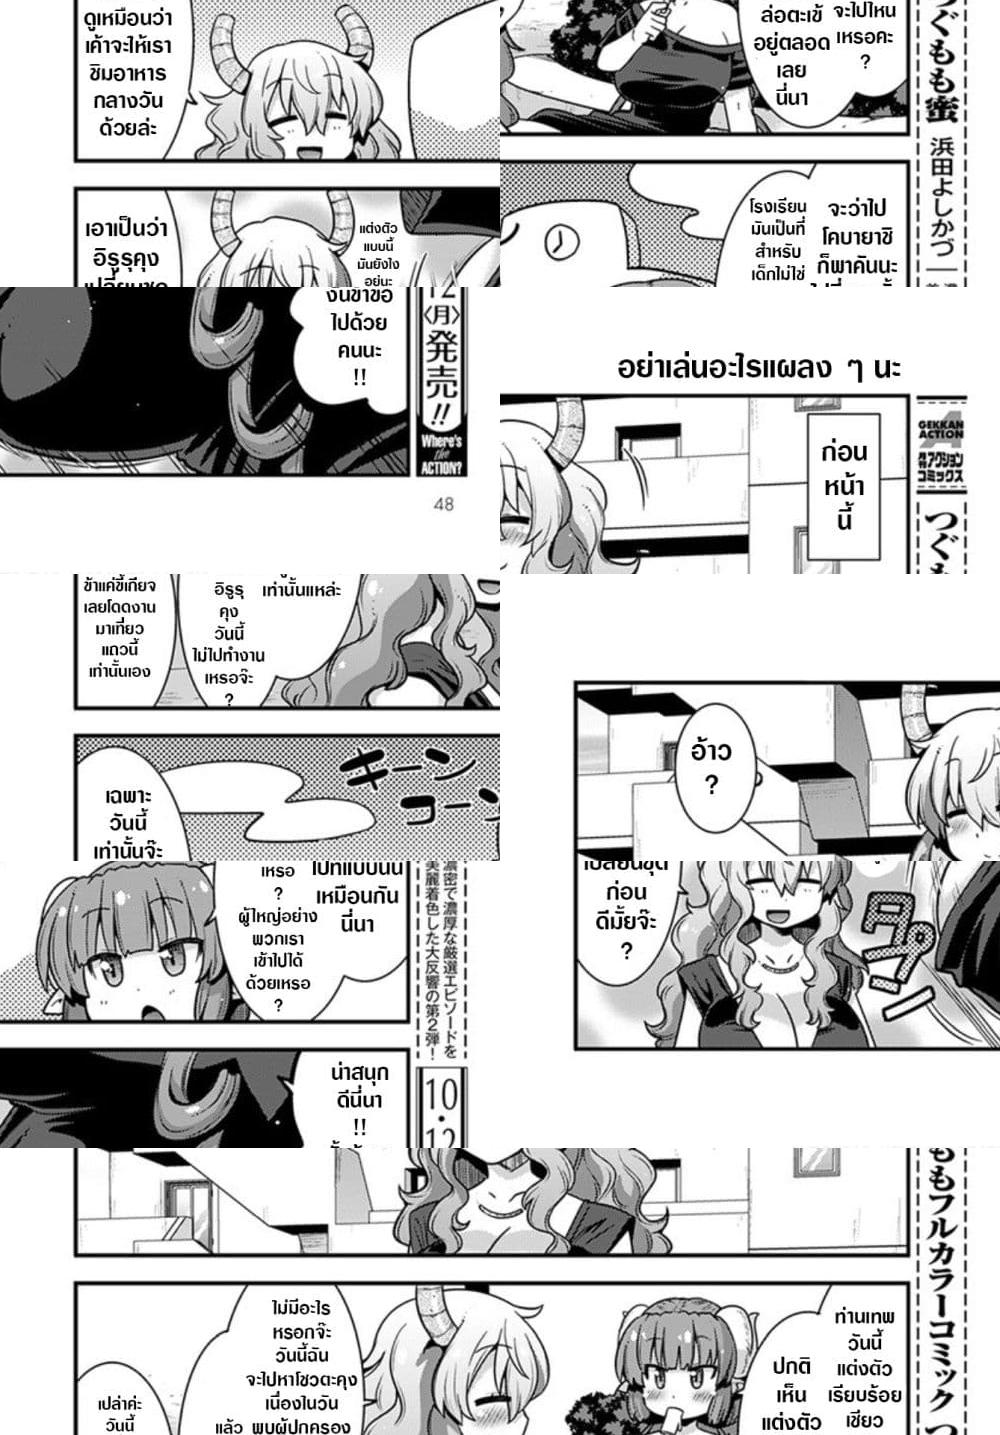 Miss Kobayashi's Dragon Maid: Lucoa is my xx - 21 - 2